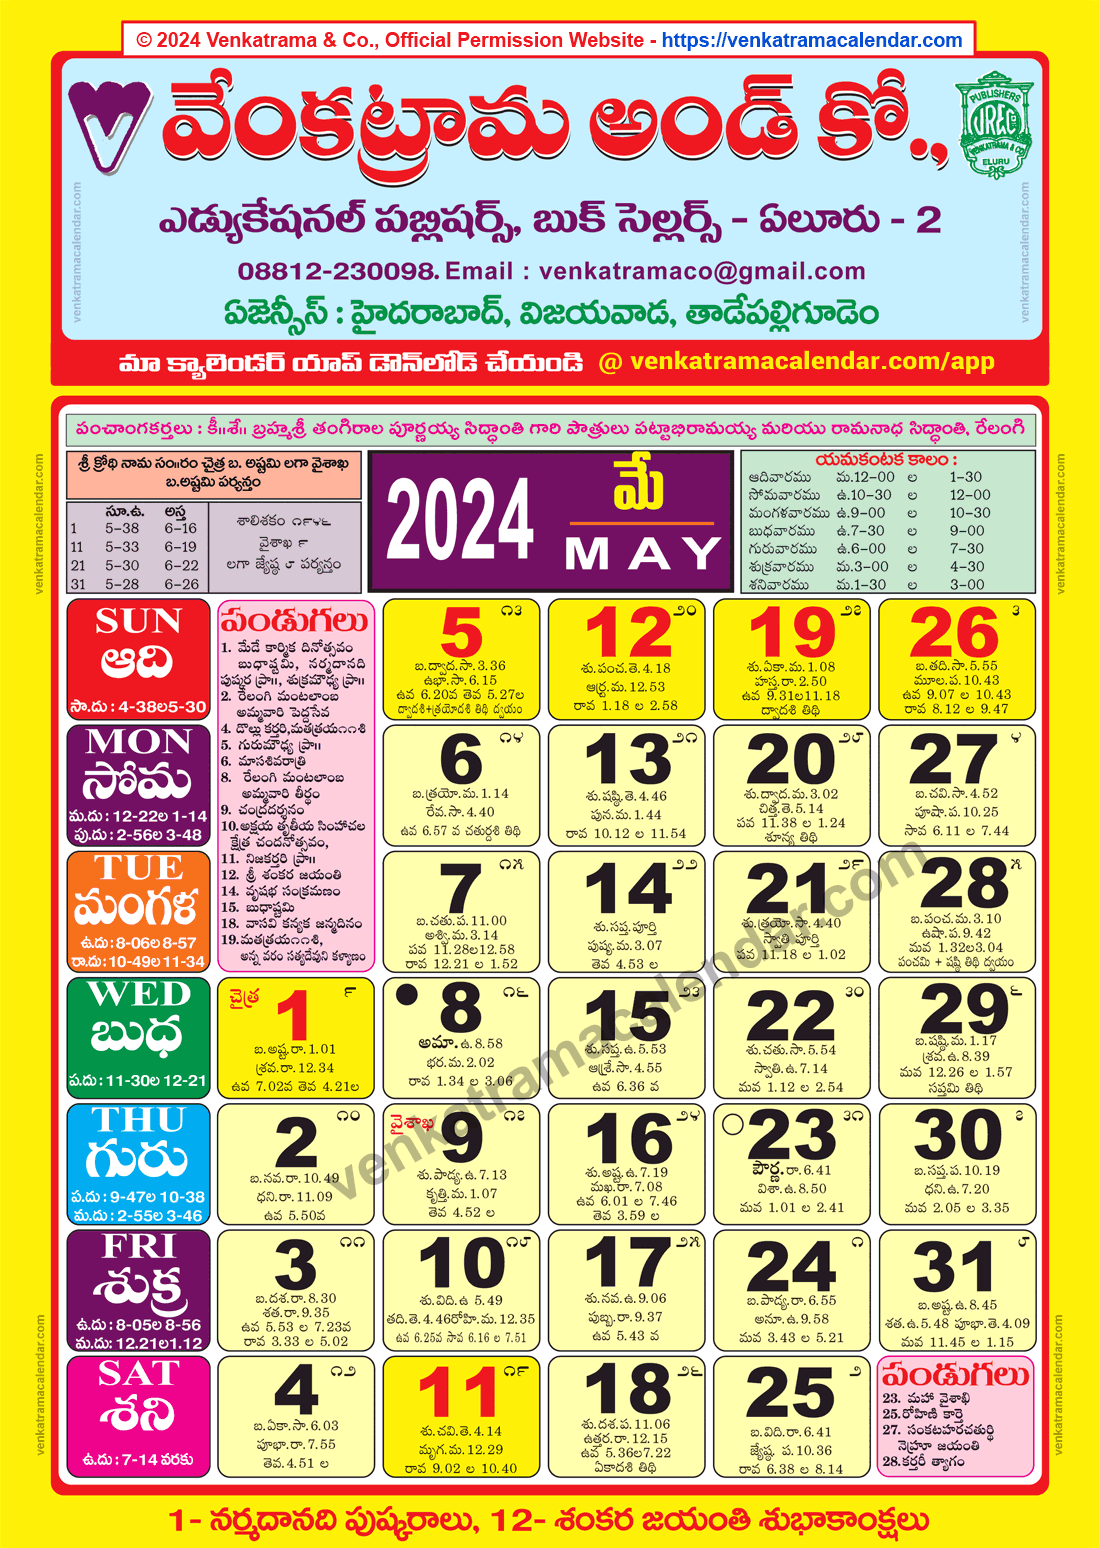 Venkatrama Calendar 2024 May